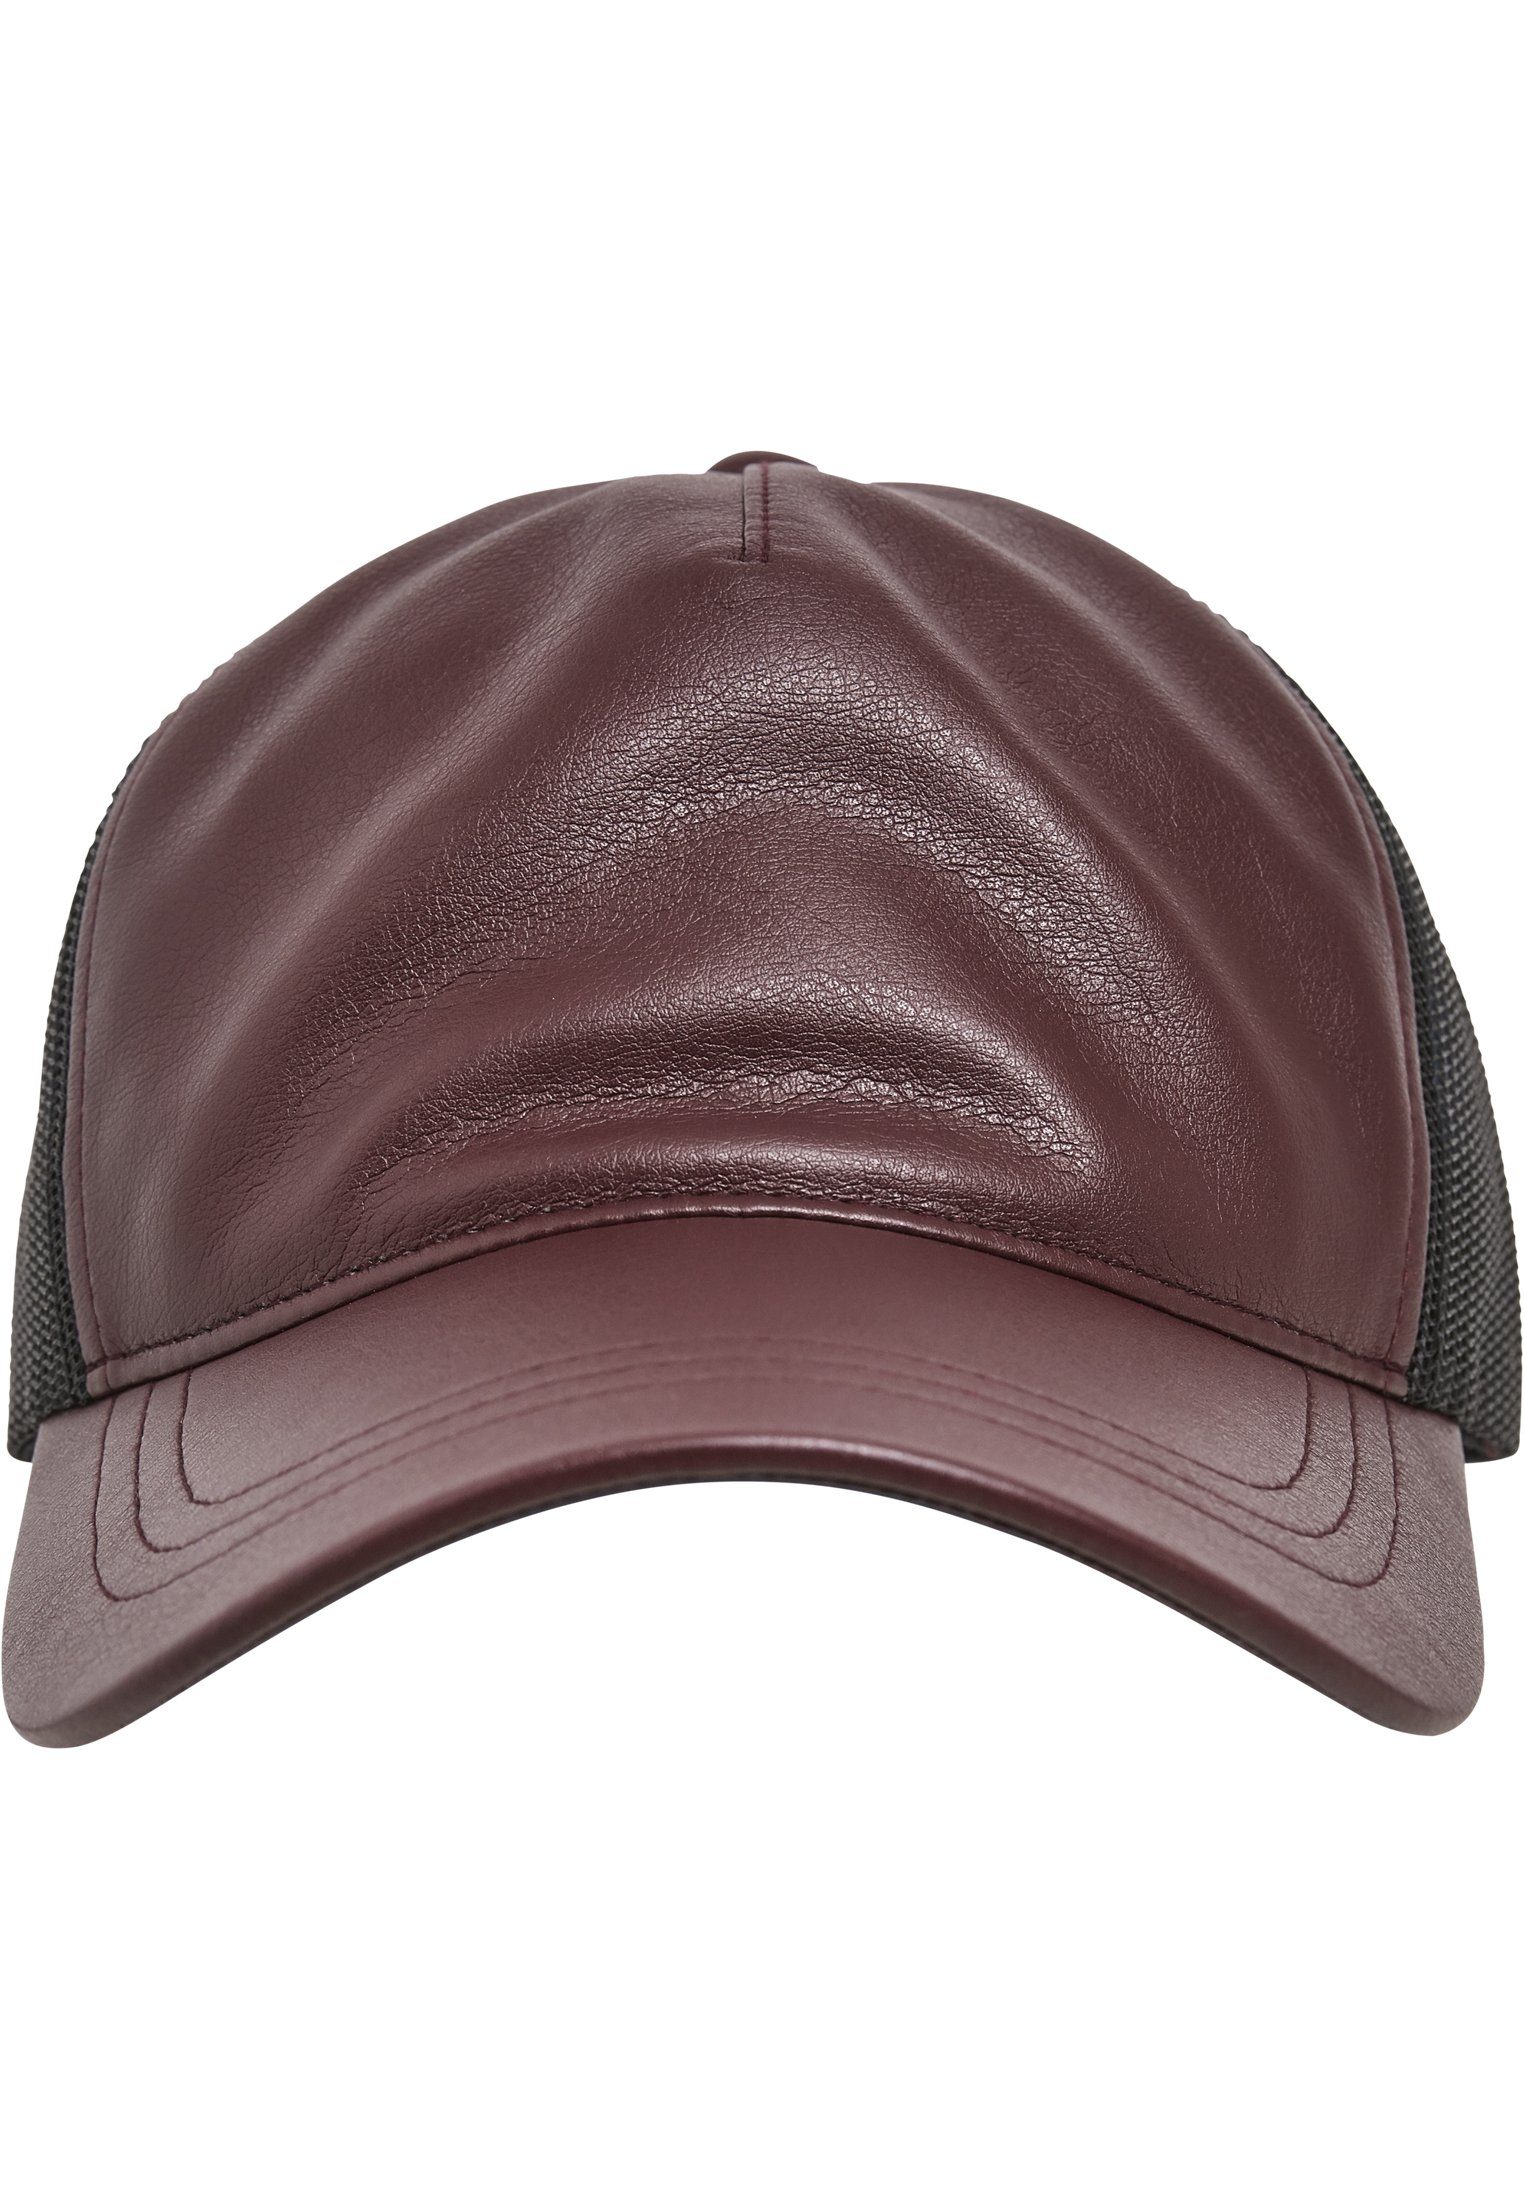 Trucker Flexfit Leather Cap Trucker maroon/black Synthetic Flex